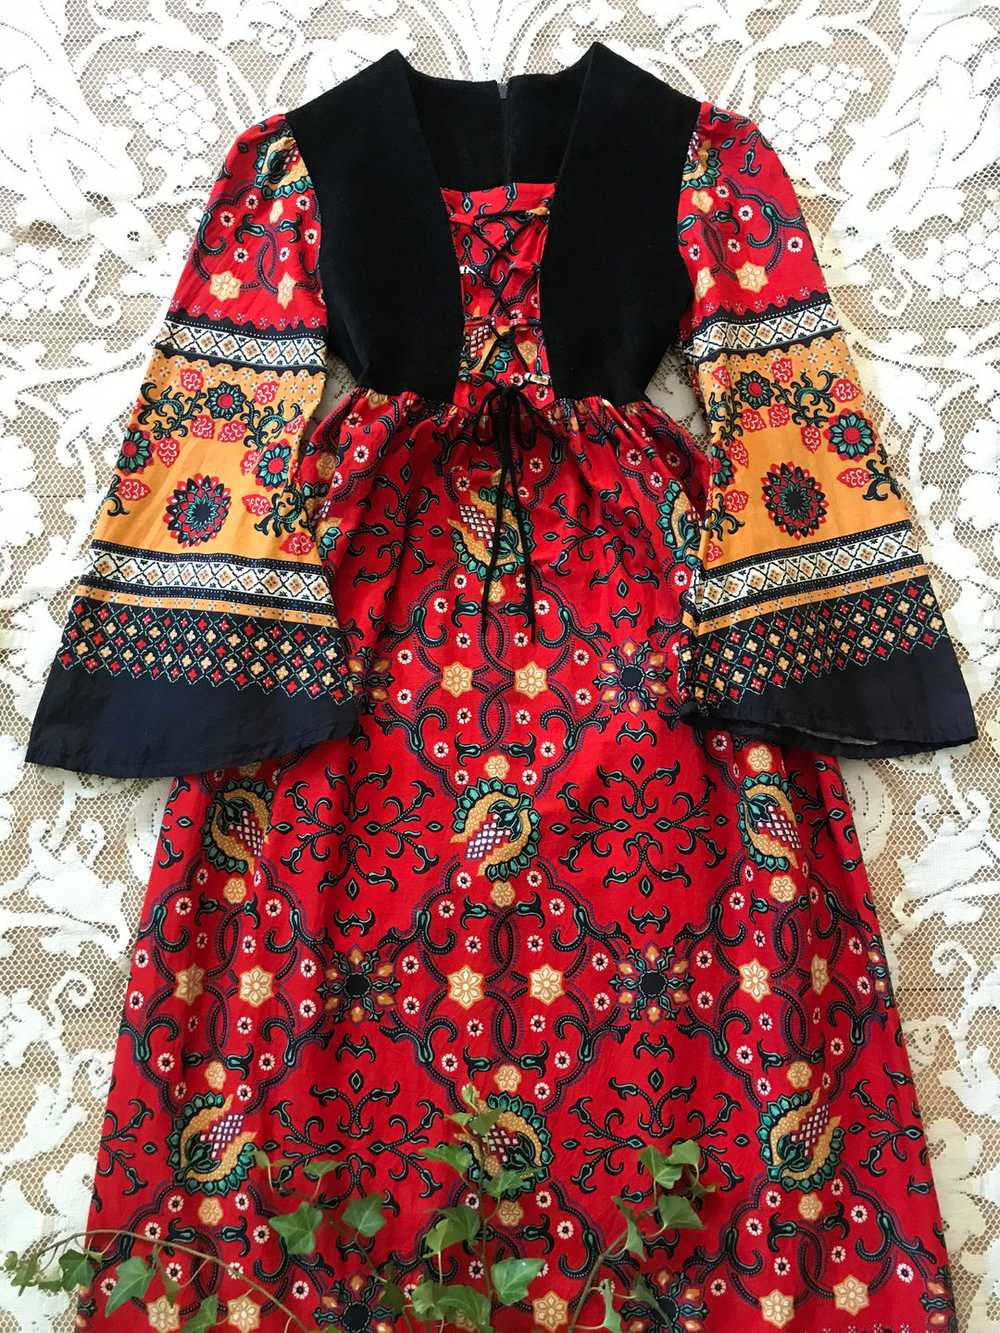 Authentic 1970’s vintage paisley print dress 🌿⚔️… - image 2